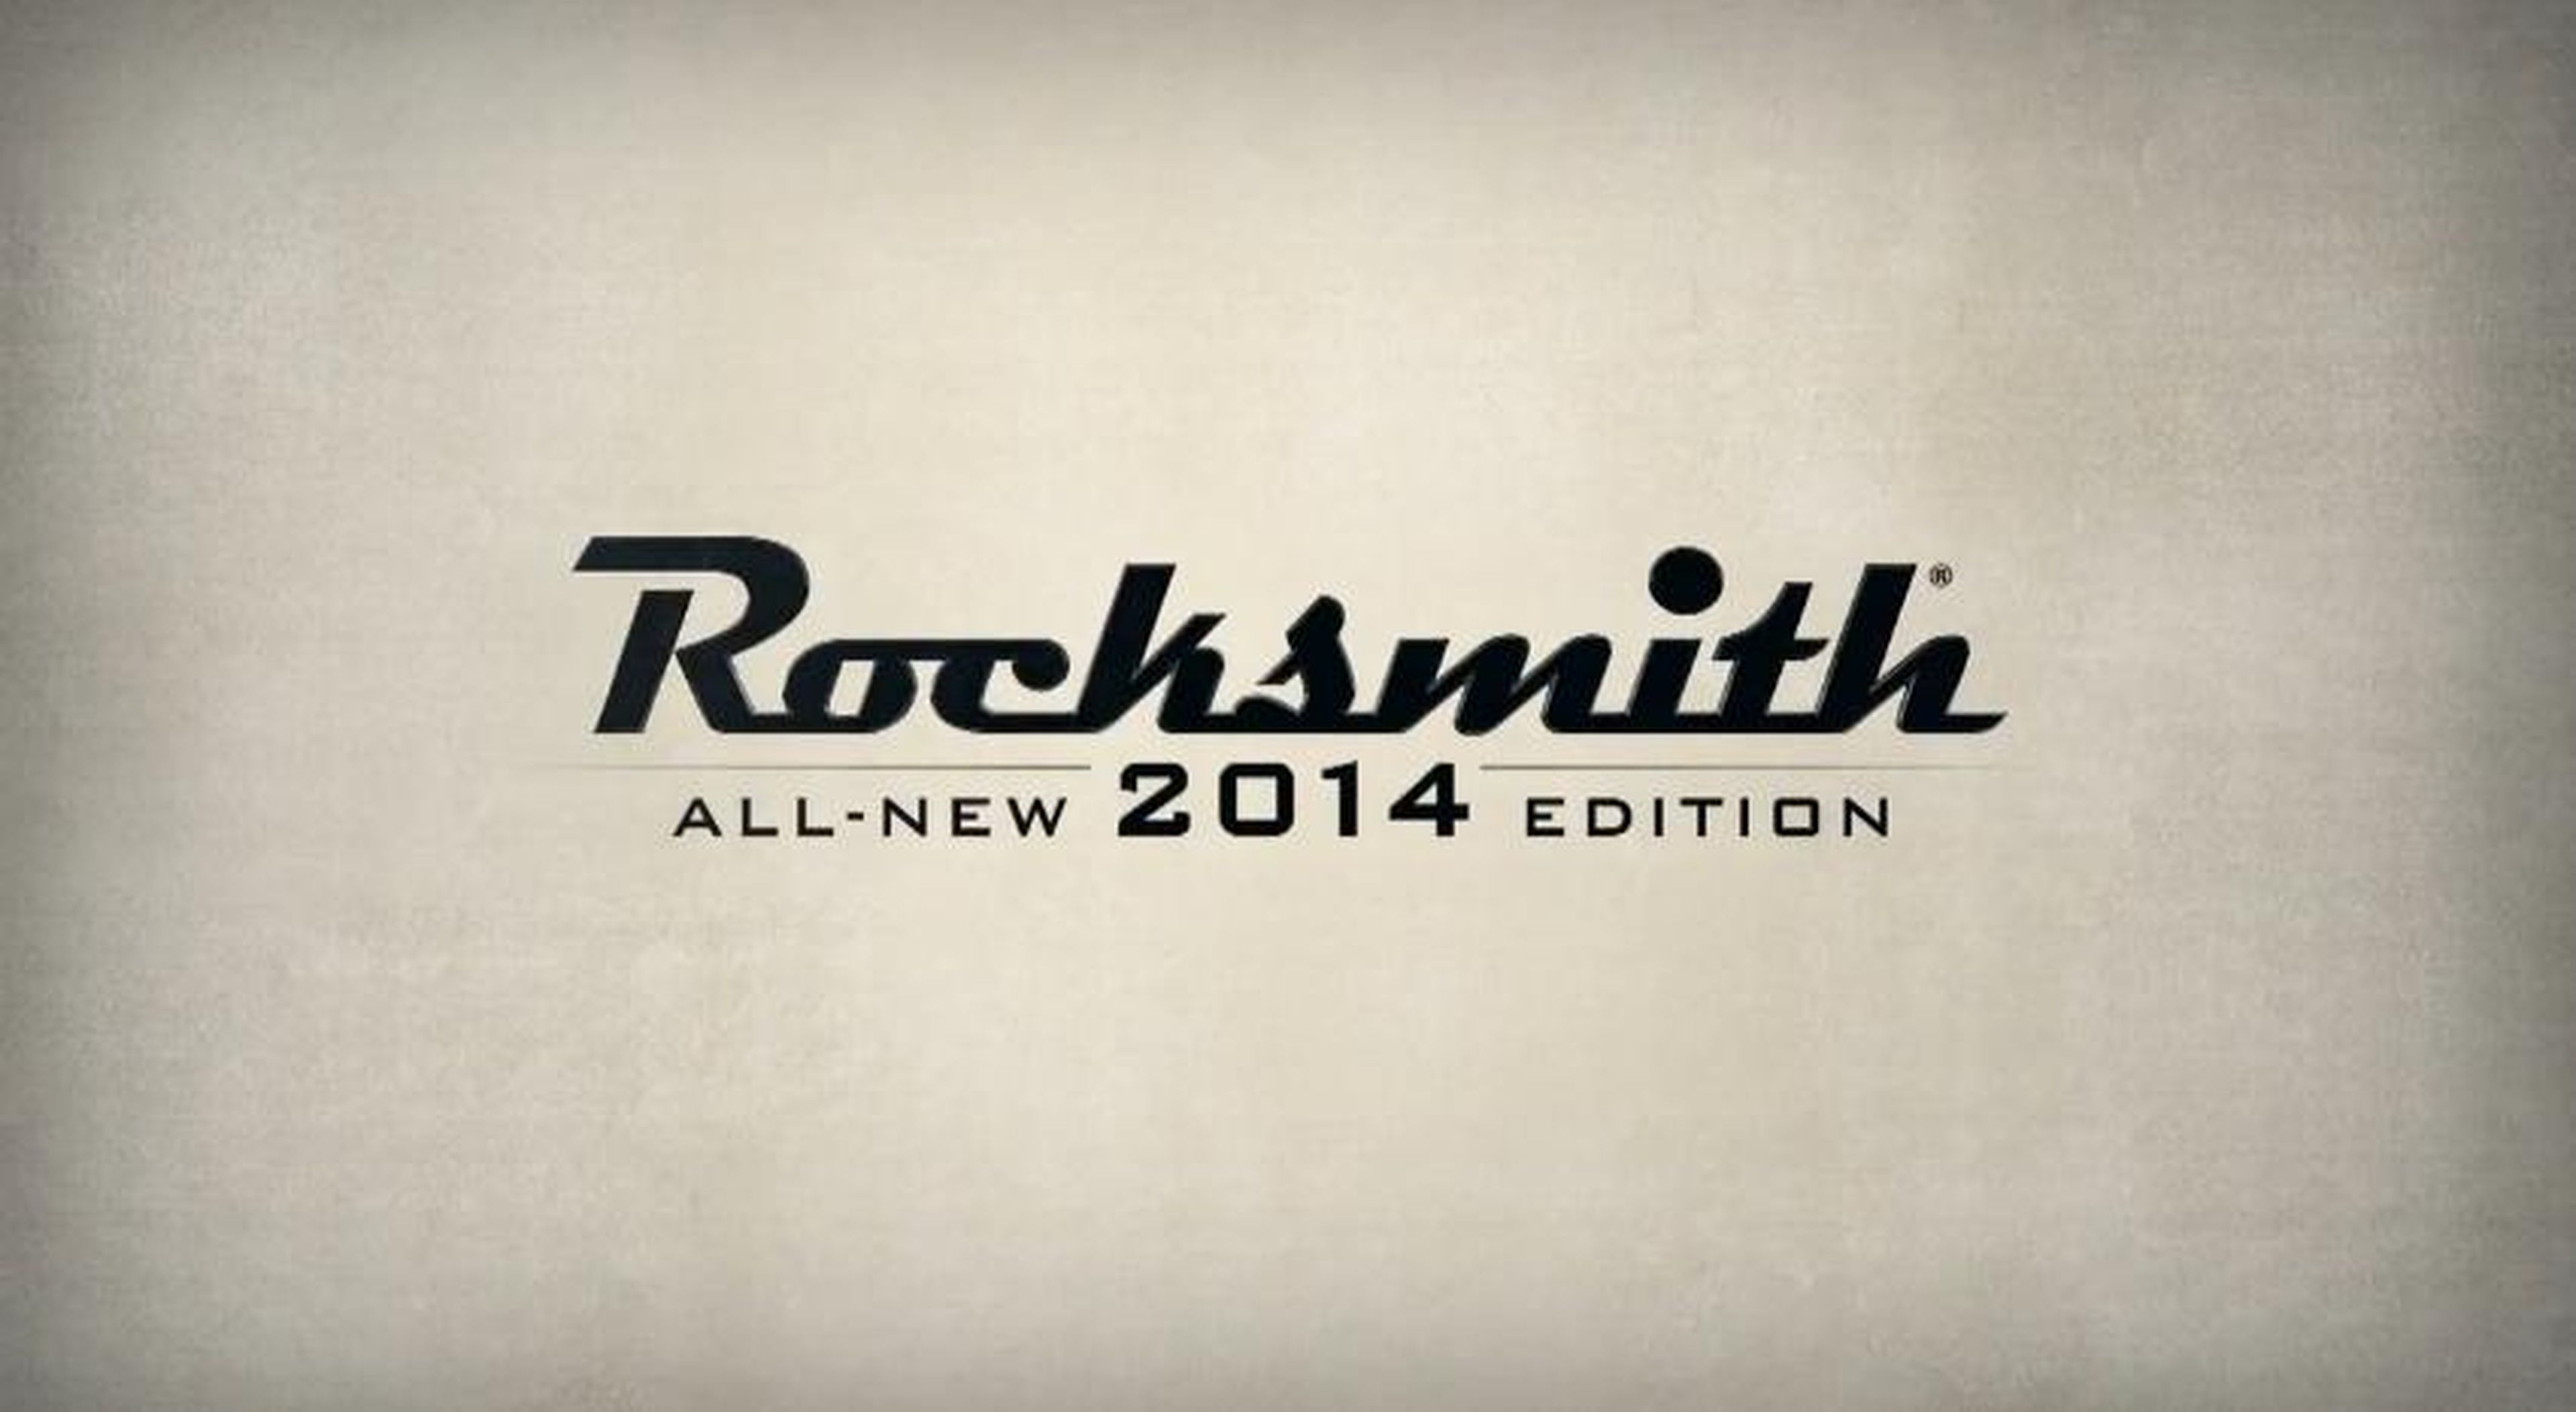 Con Rocksmith 2014 tocaremos la guitarra mejor que nunca